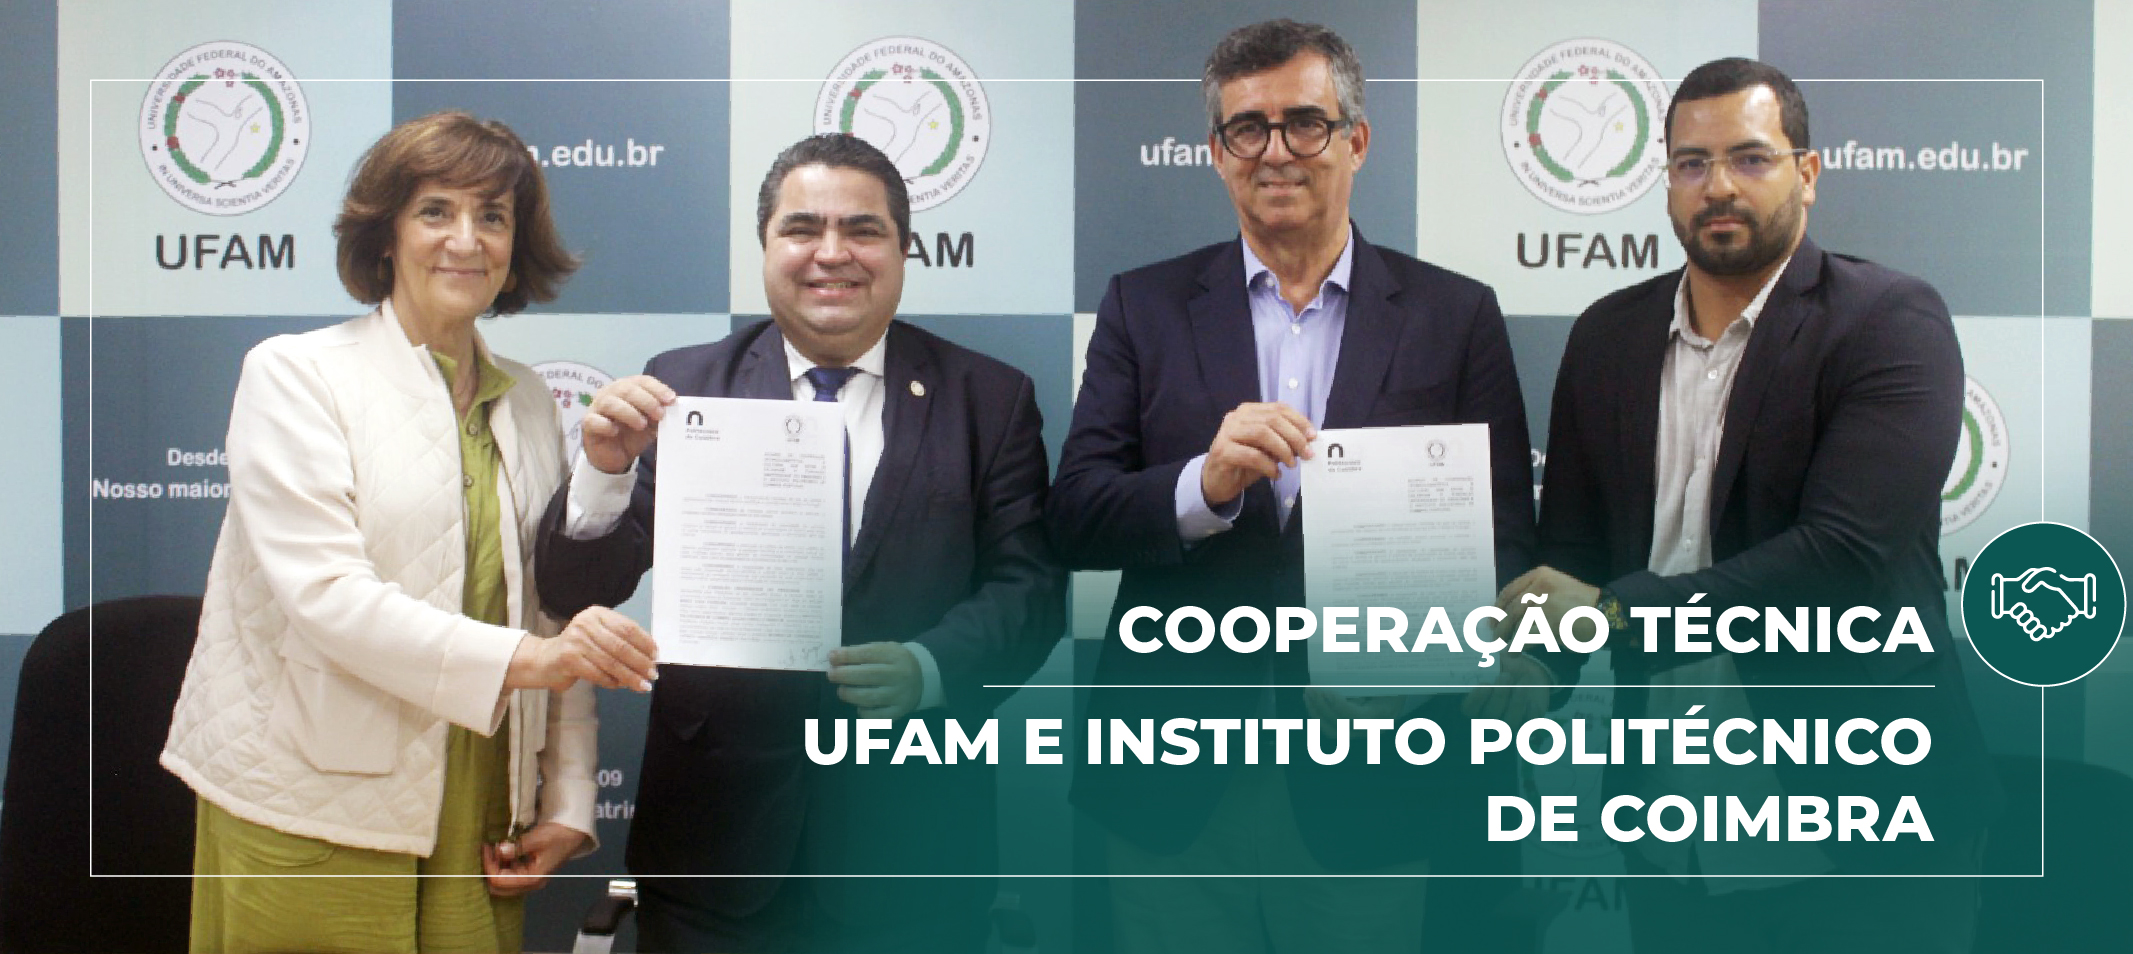 Reitor da Ufam e presidente do Instituto Politécnico de Coimbra assinam cooperação e planejam evento internacional em 2025 